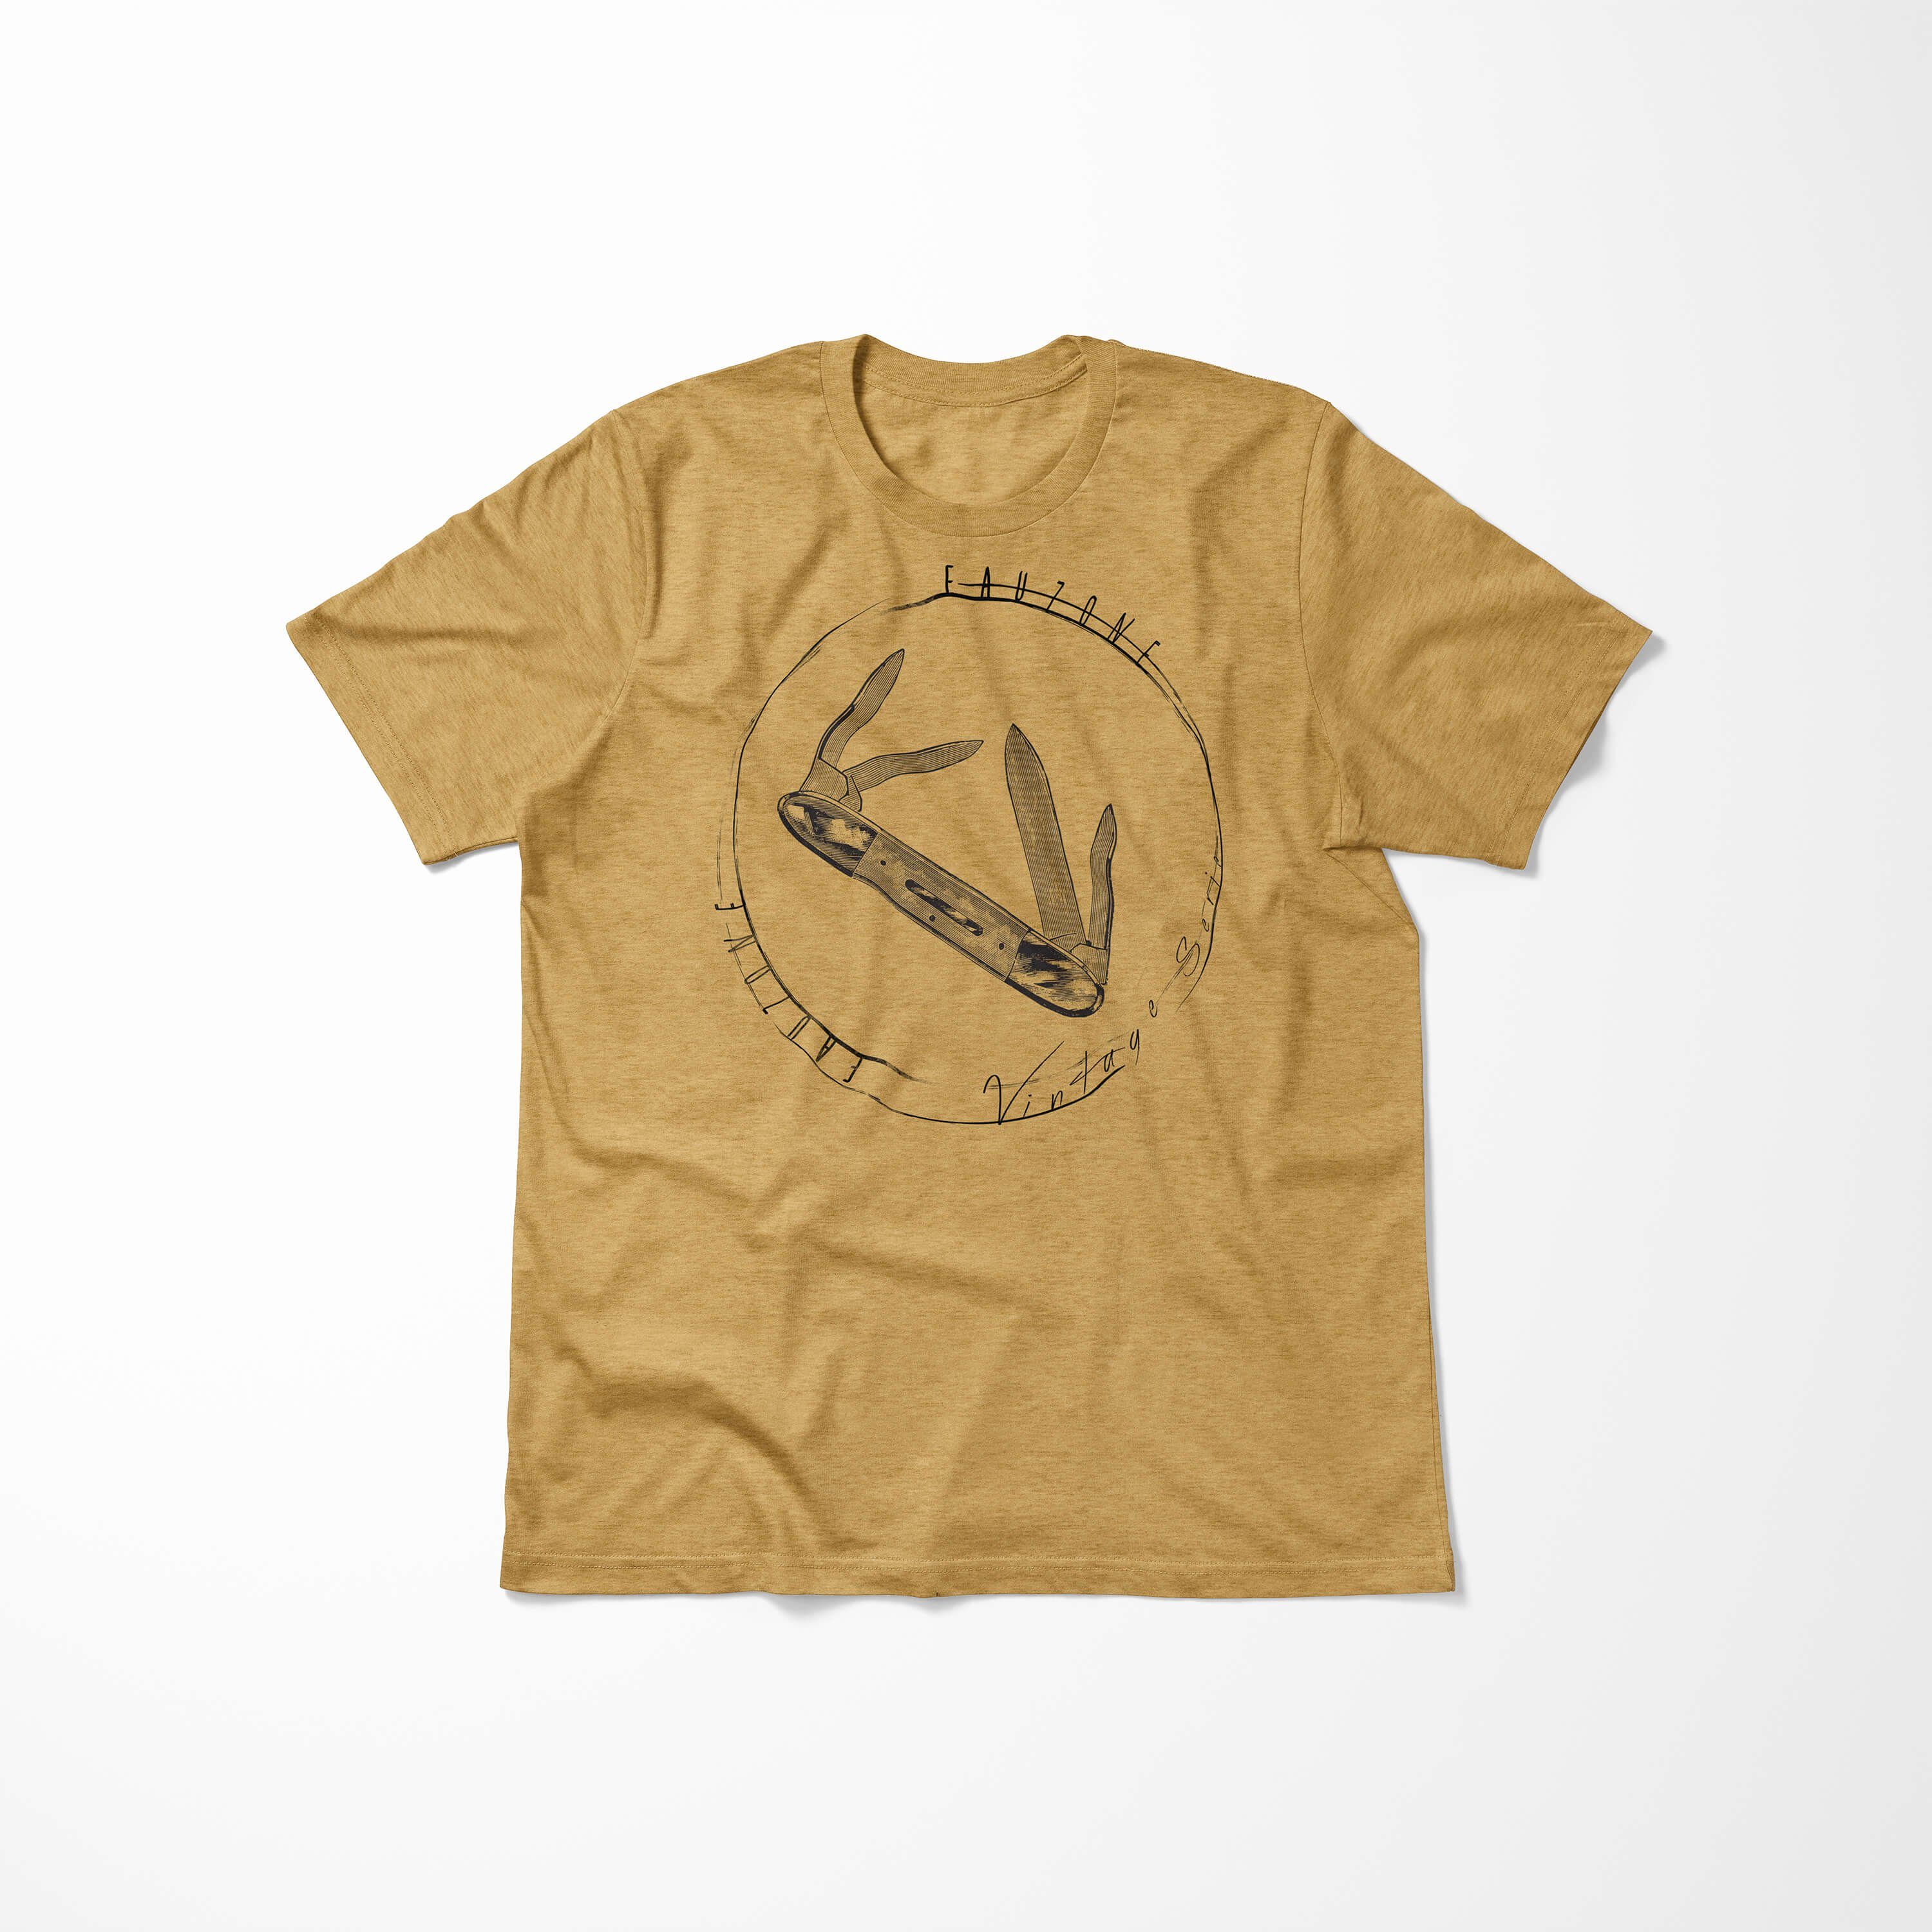 T-Shirt Herren Vintage Taschenmesser T-Shirt Art Sinus Gold Antique